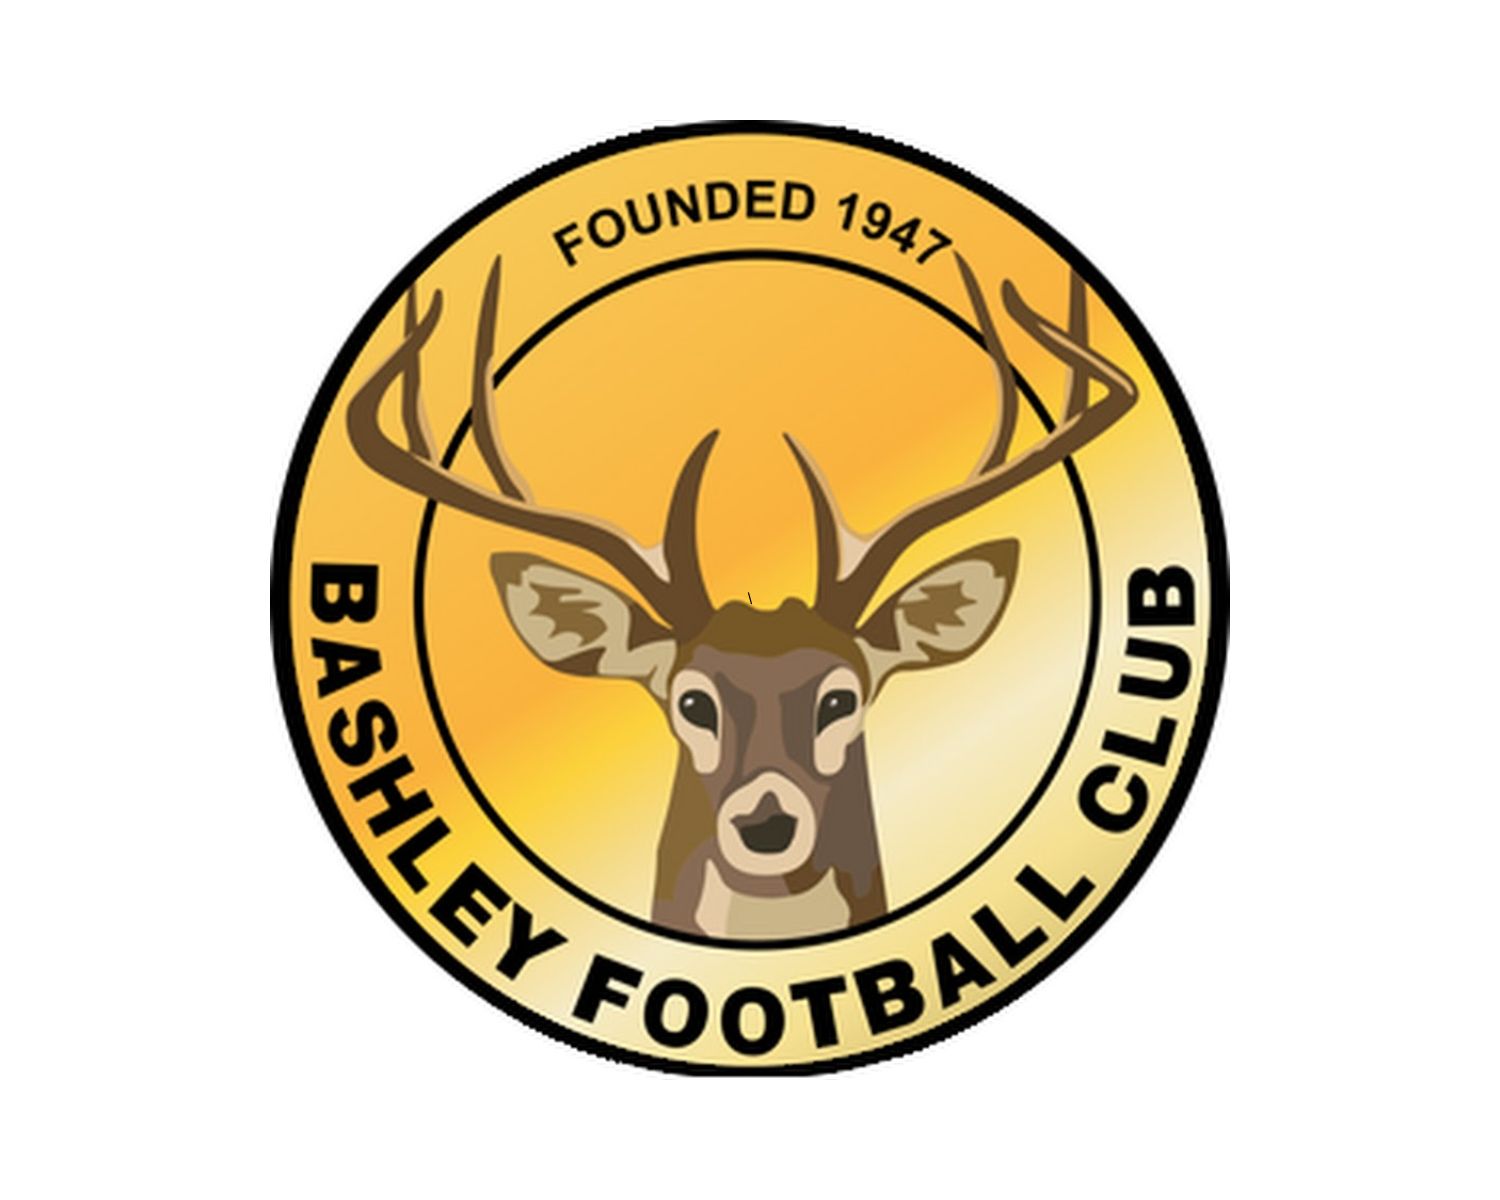 bashley-fc-21-football-club-facts